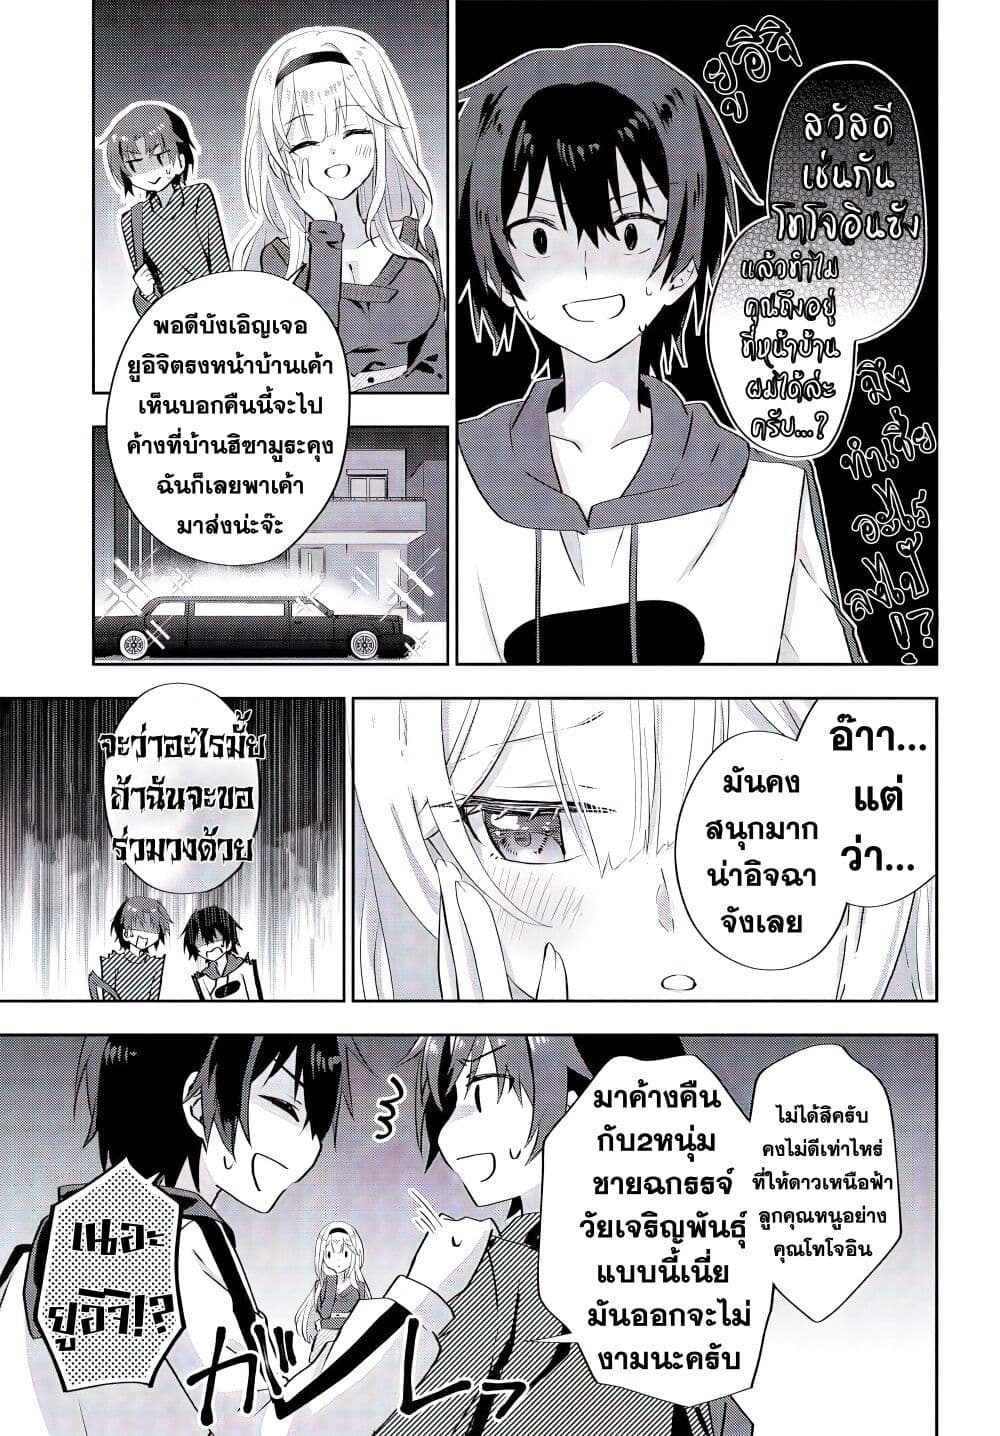 Romcom Manga ni Haitte Shimatta no de, Oshi no ตอนที่ 5.2 (8)